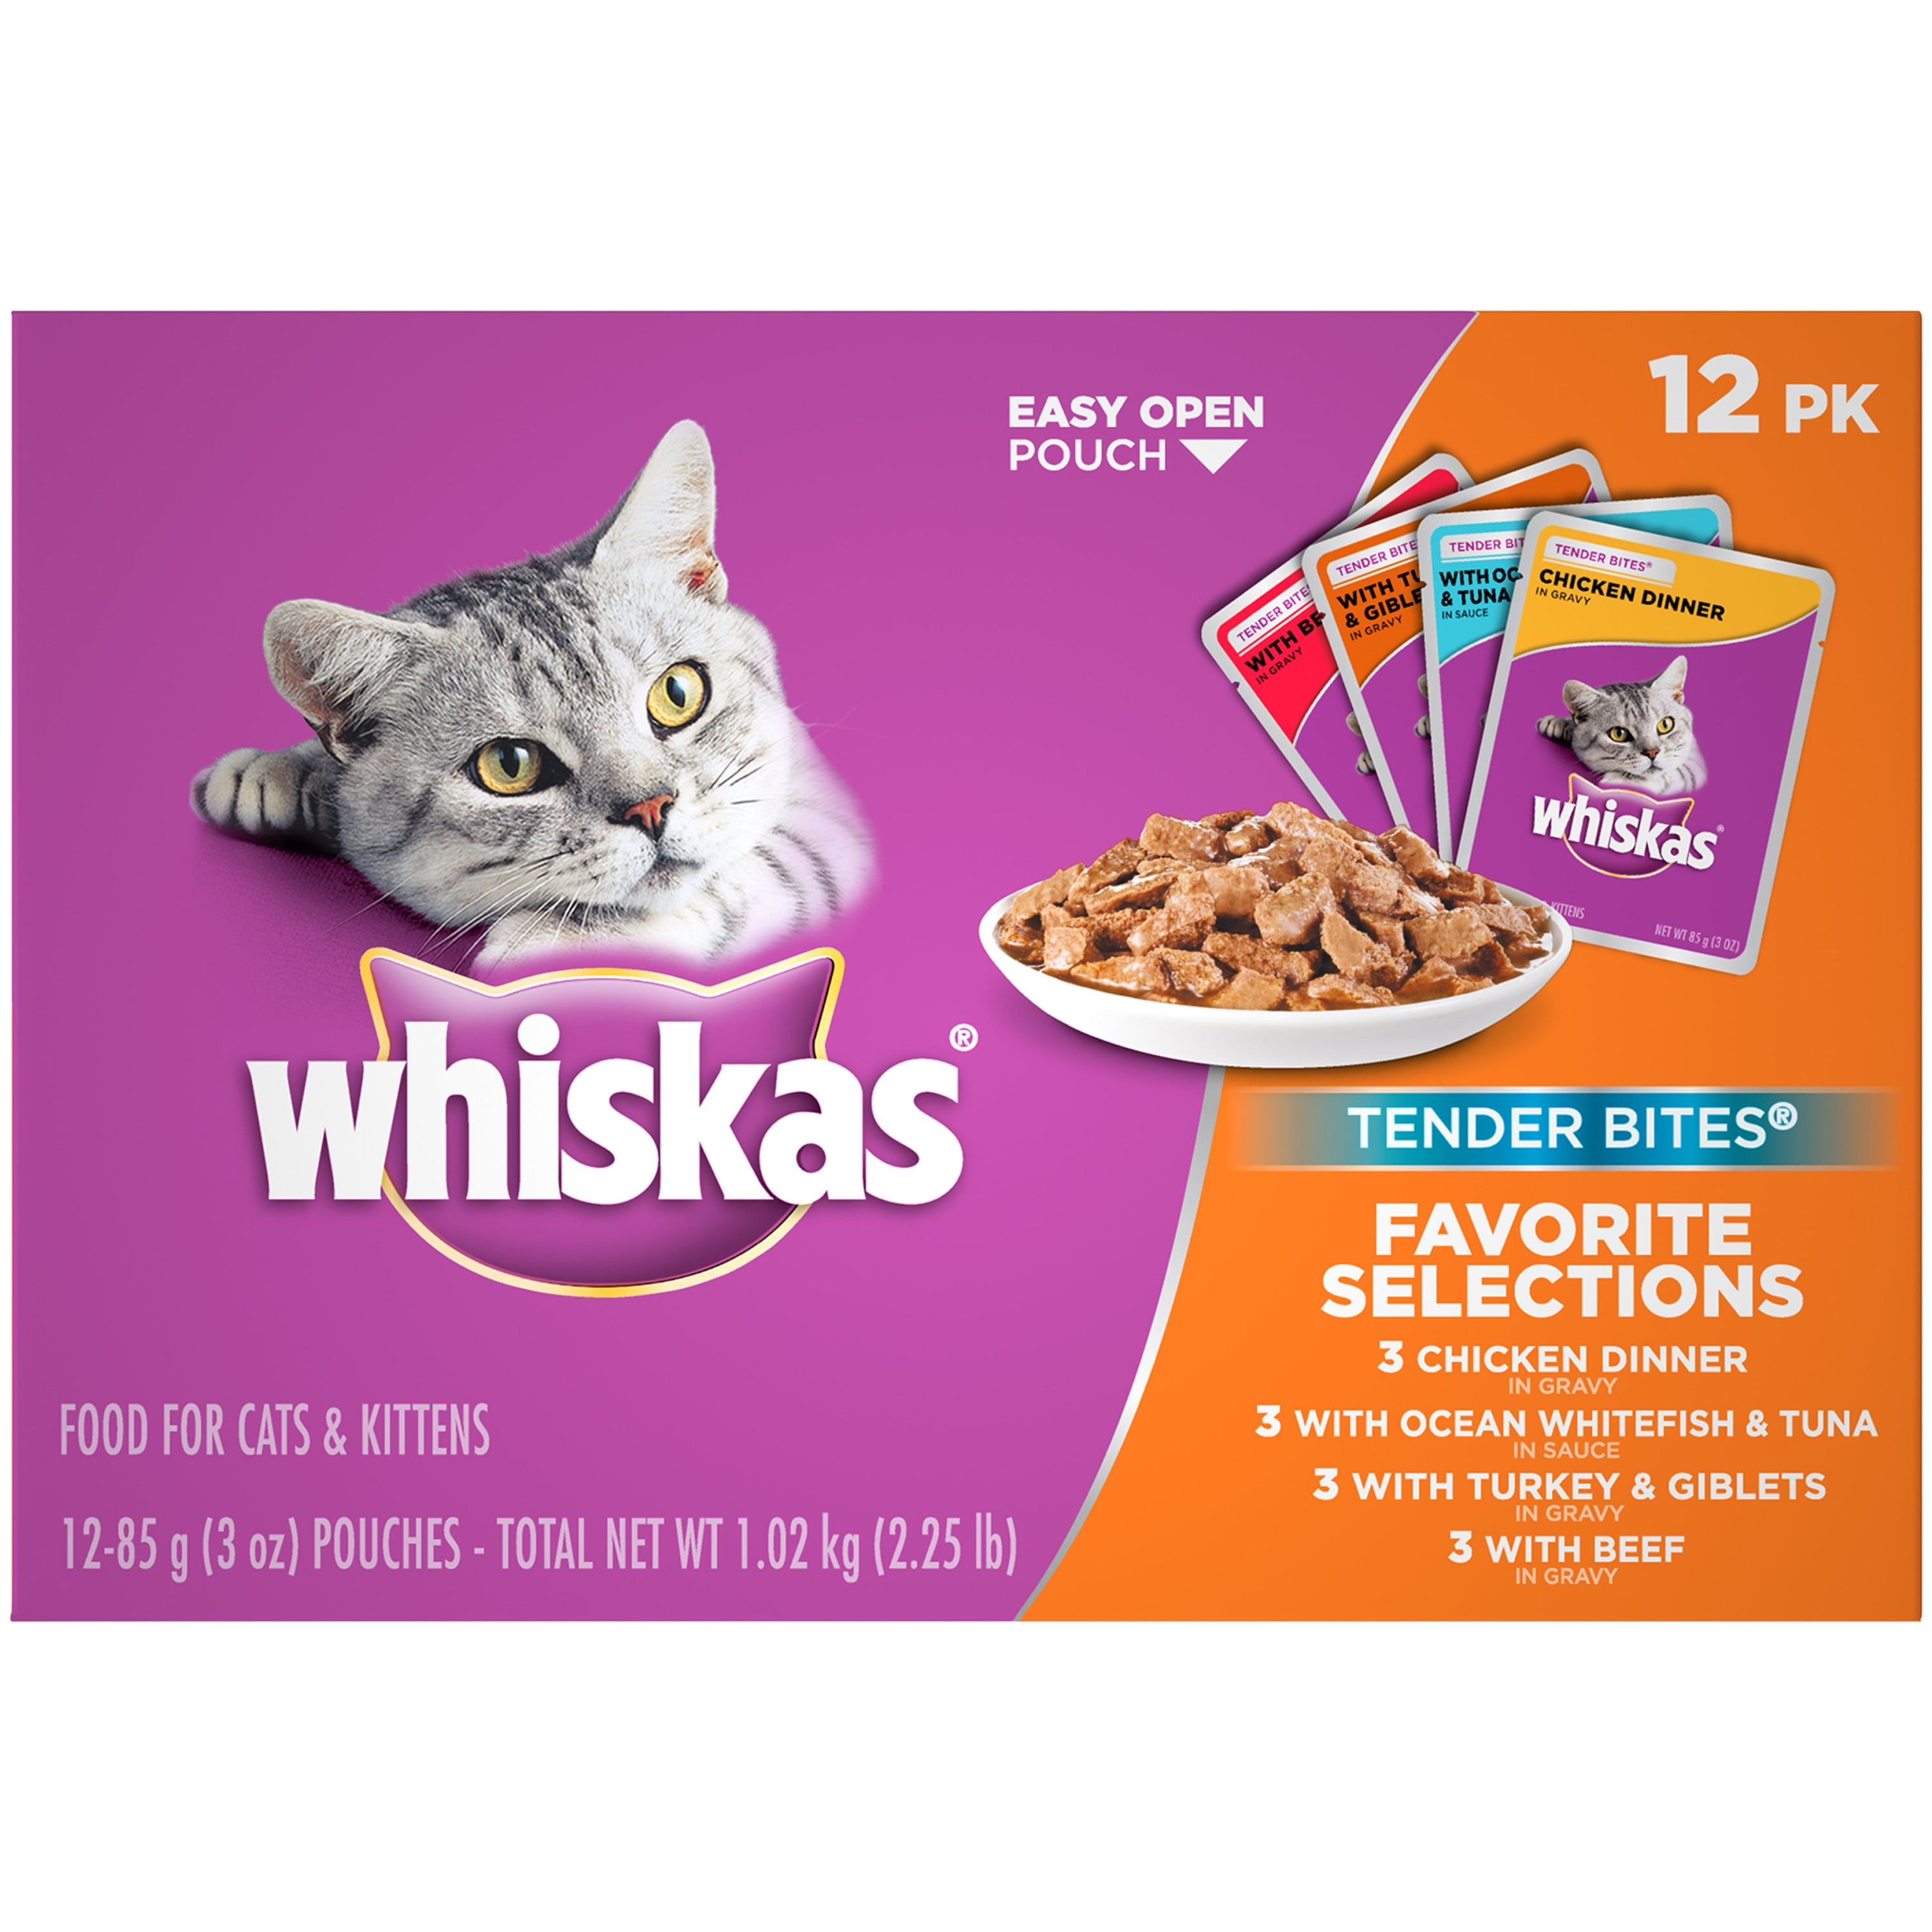 whiskas junior cat food